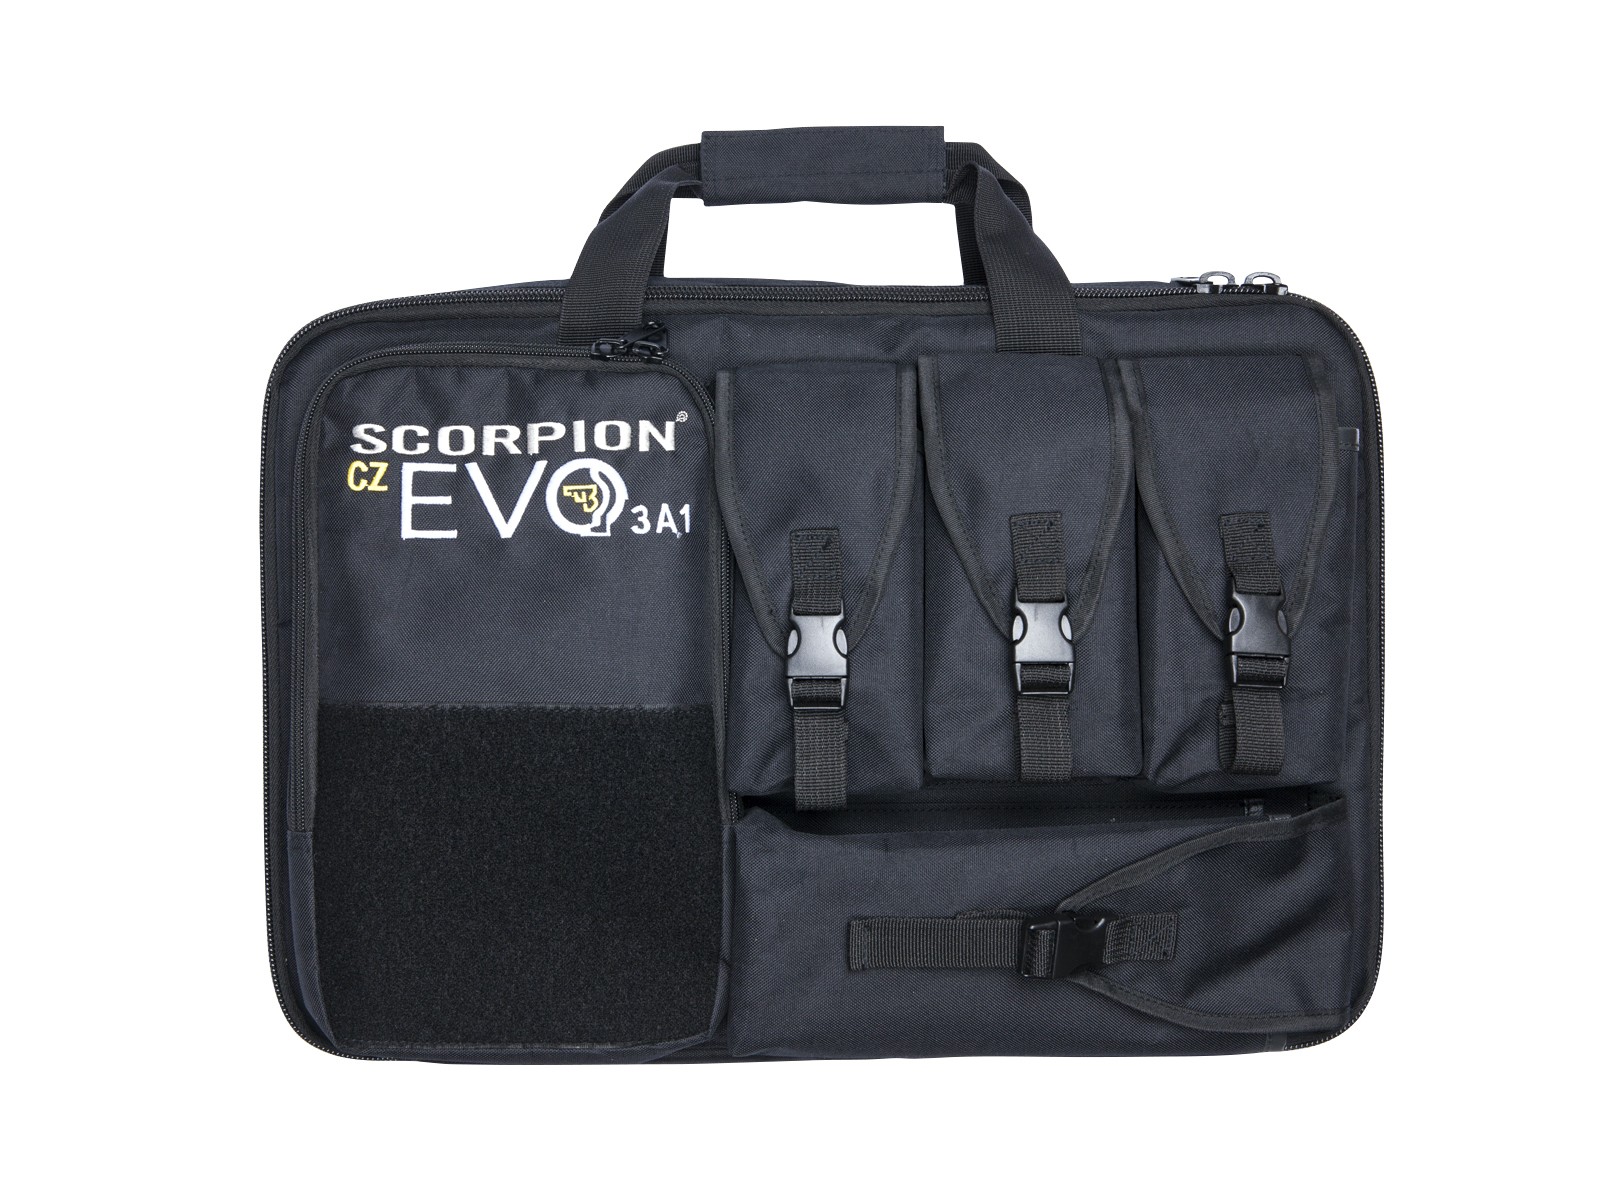 ASG - Housse spéciale Scoprion Evo3 A1 + Accessoires - Mousse prédécoupée - Noire